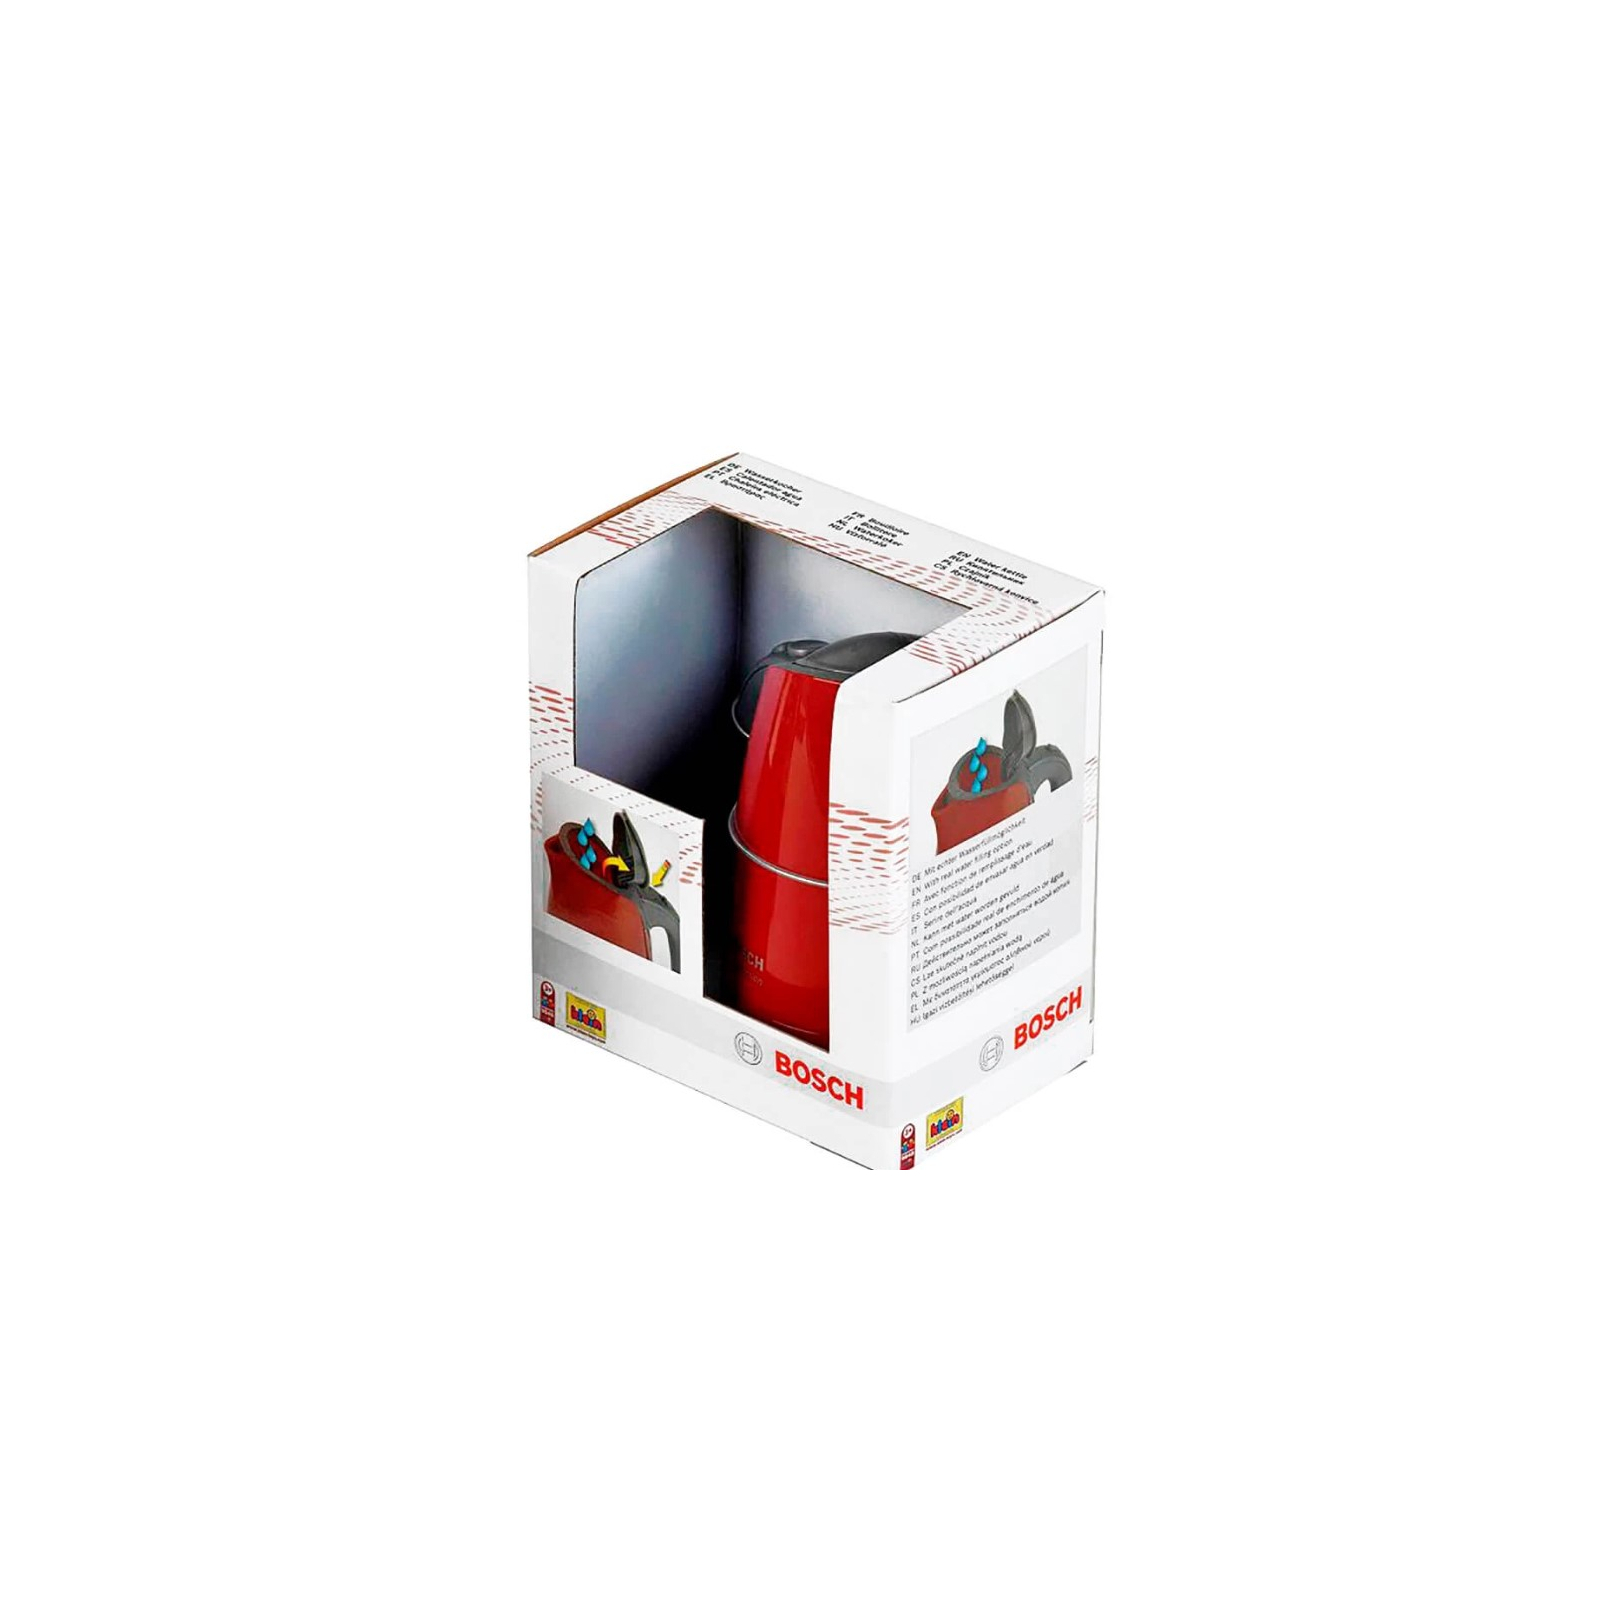 Игровой набор Bosch Чайник, красно-серый (9548) изображение 2